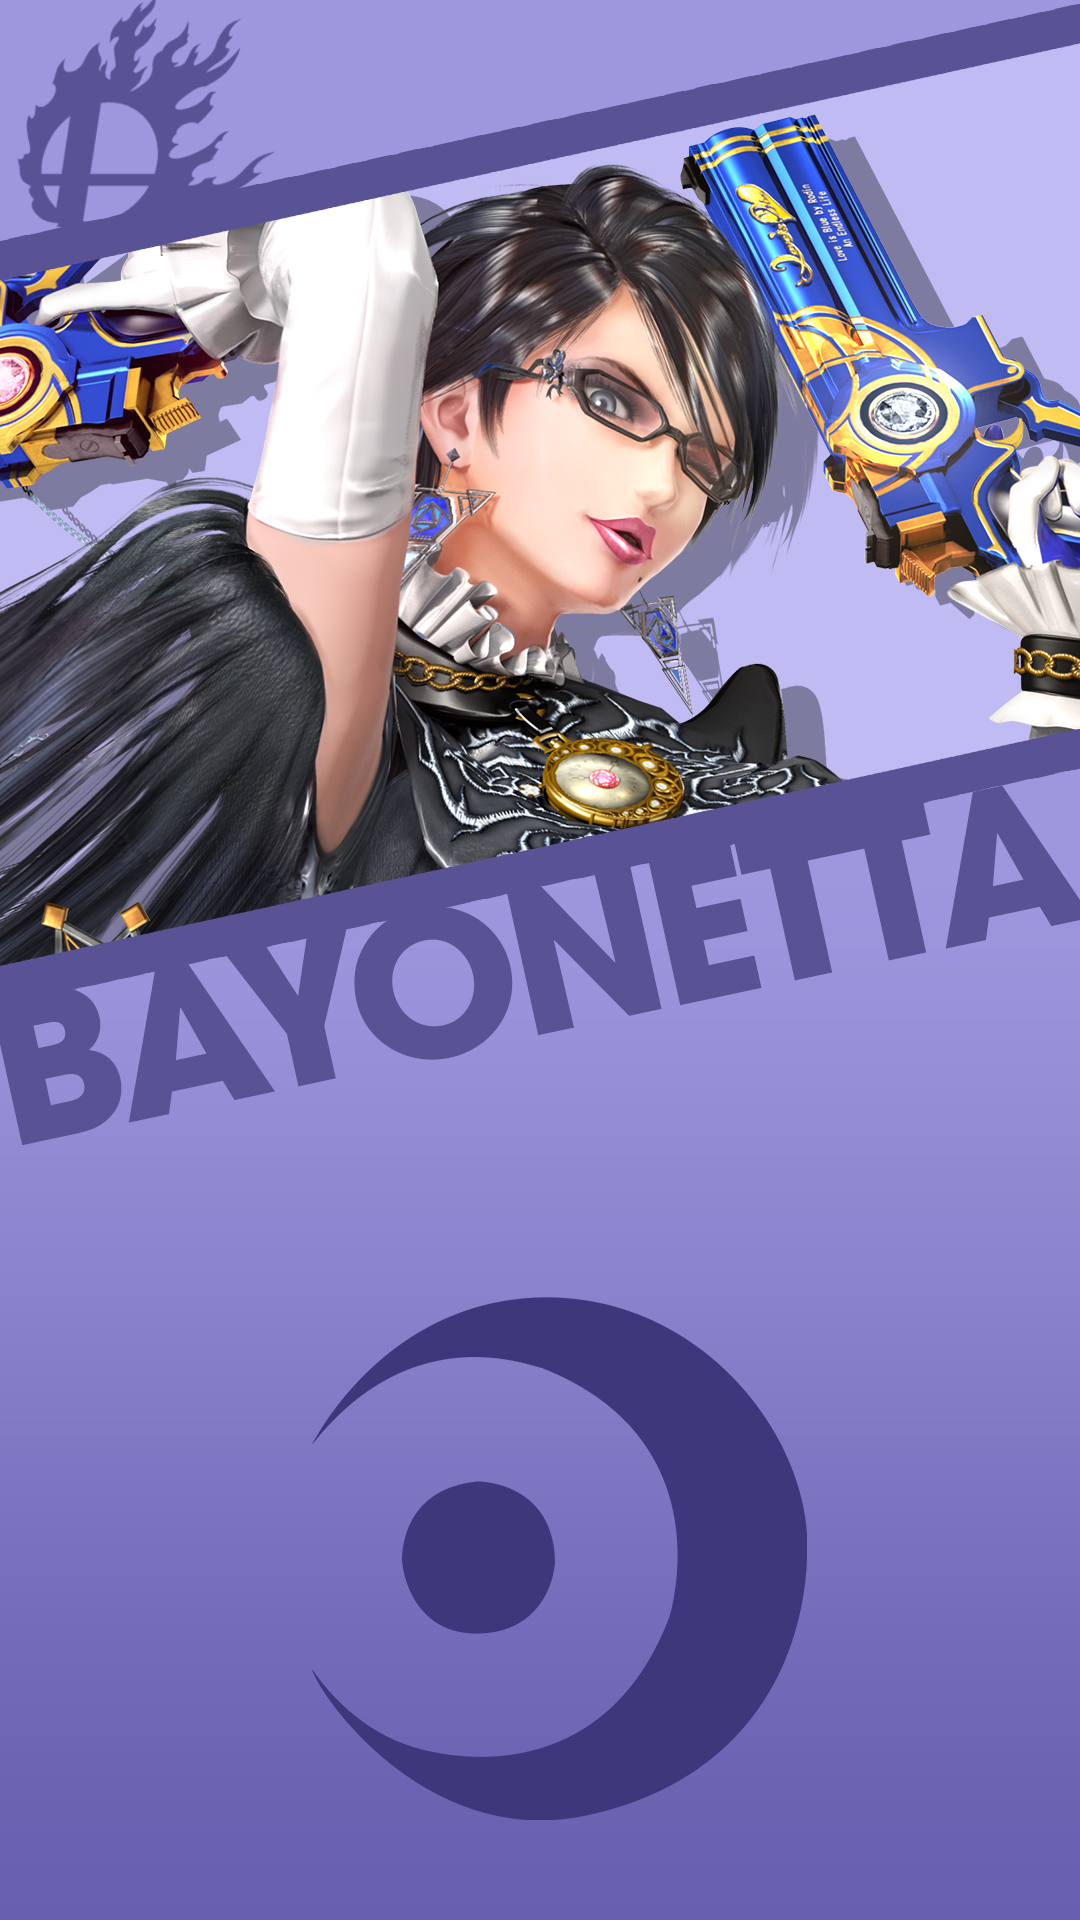 Bayonetta Smash Bros. Phone Wallpaper by MrThatKidAlex24 on DeviantArt